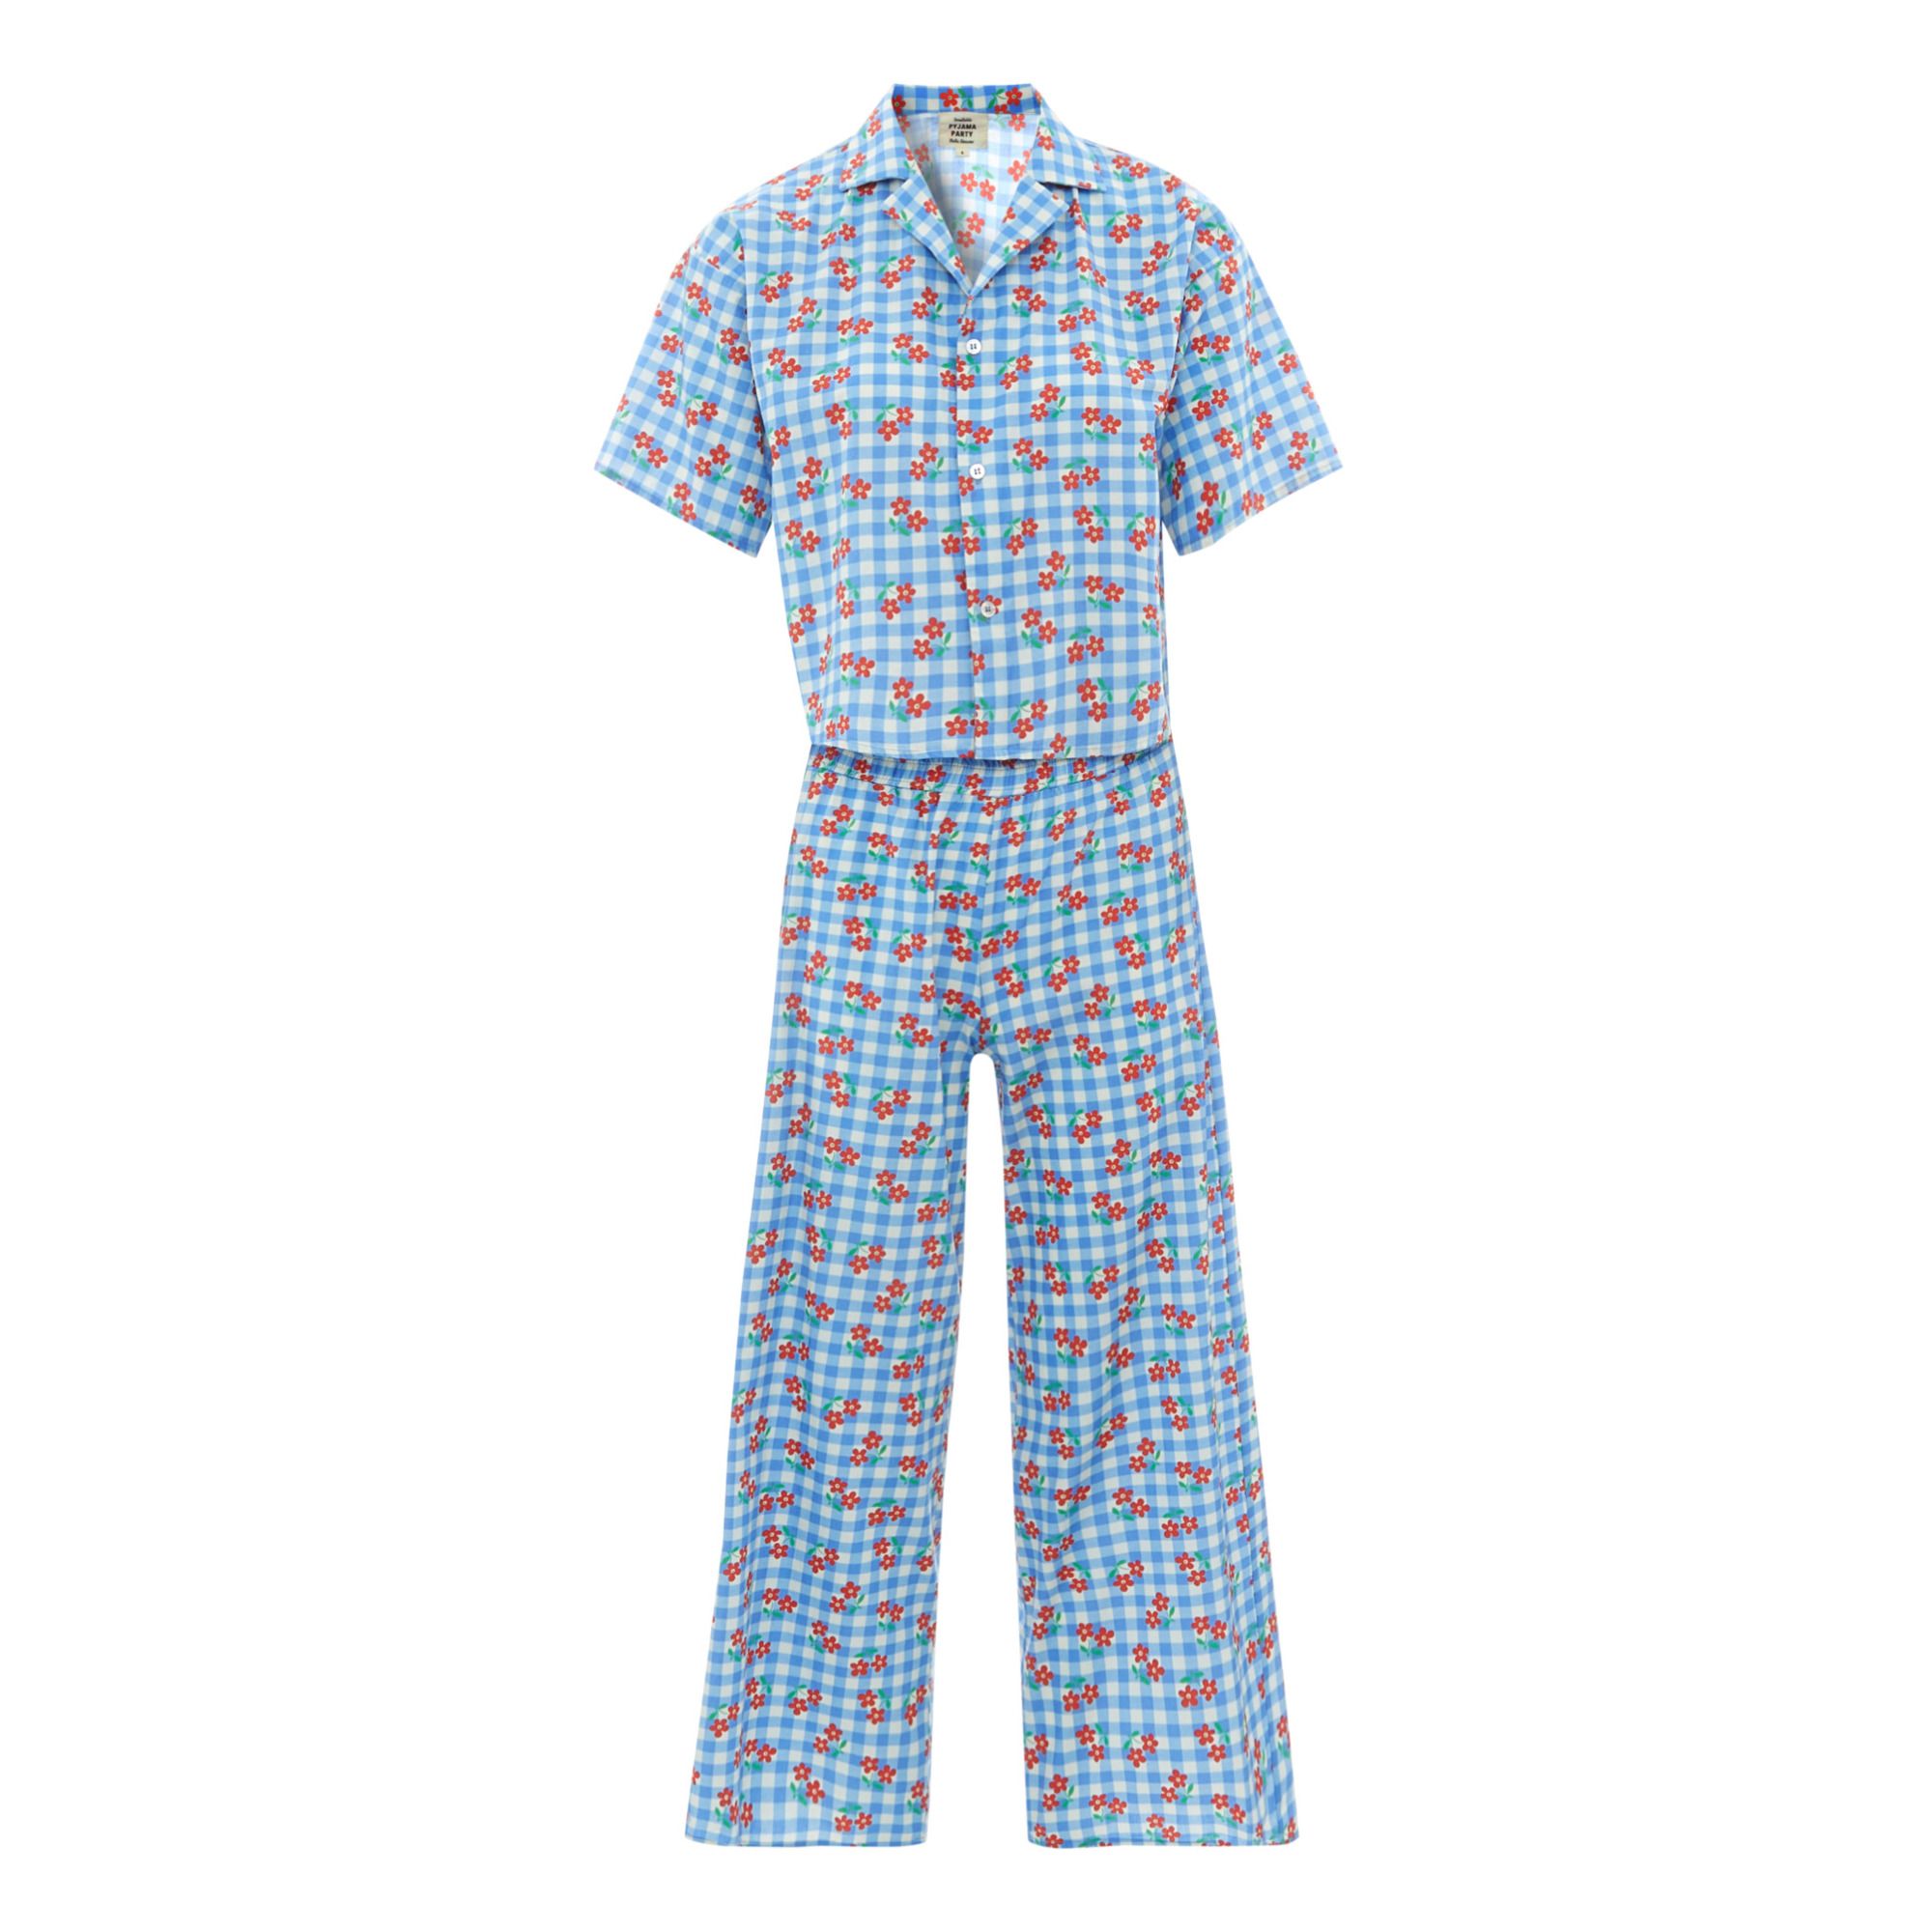 Exclusivité Hello Simone x Smallable Pyjama Party – Pyjama Chemise + Pantalon Ginger - Collection Femme - Bleu- Image produit n°0